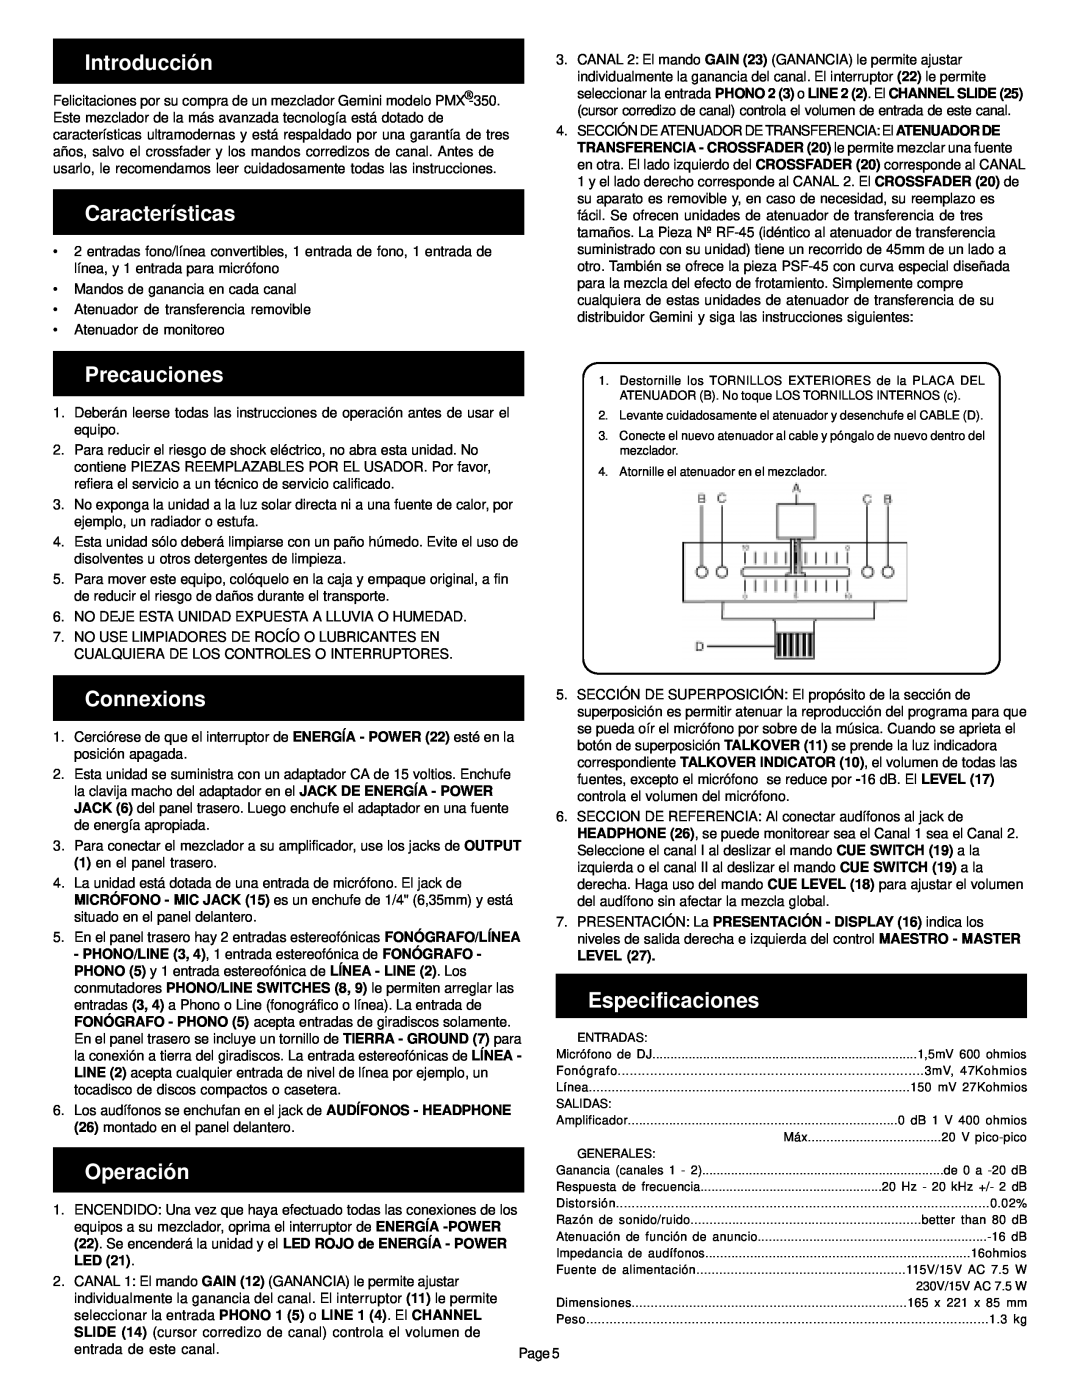 Gemini PMX-350 manual Introducción, Características, Precauciones, Connexions, Especificaciones, Operación 